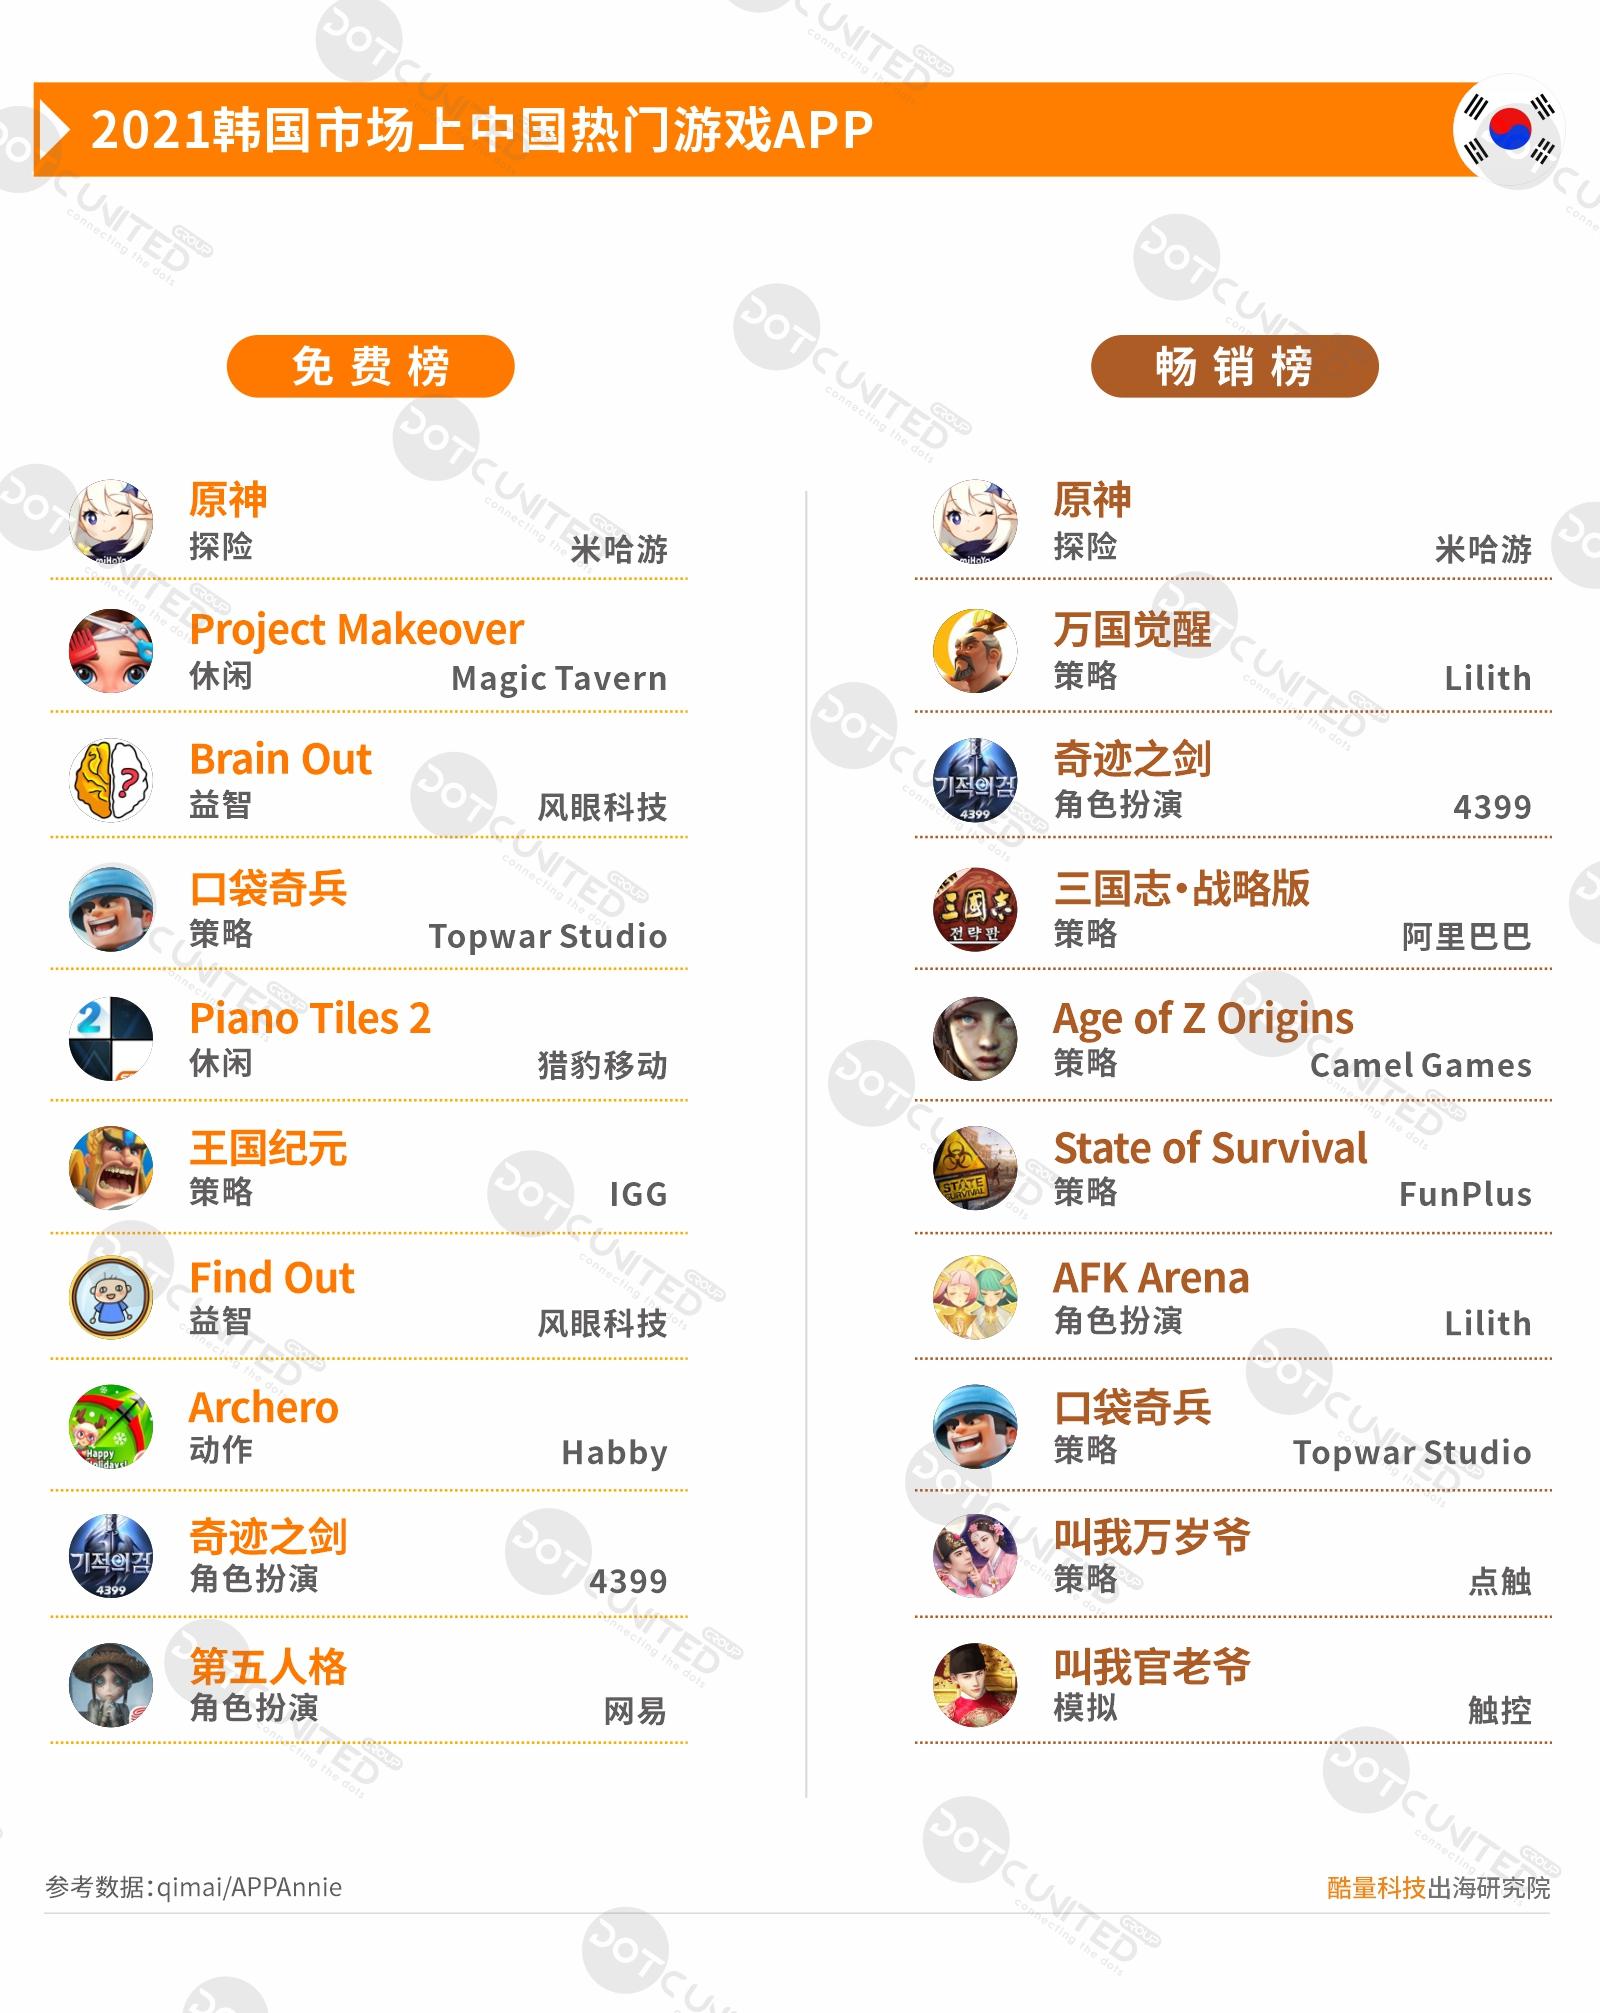 21中国移动游戏出海年度报告 36氪